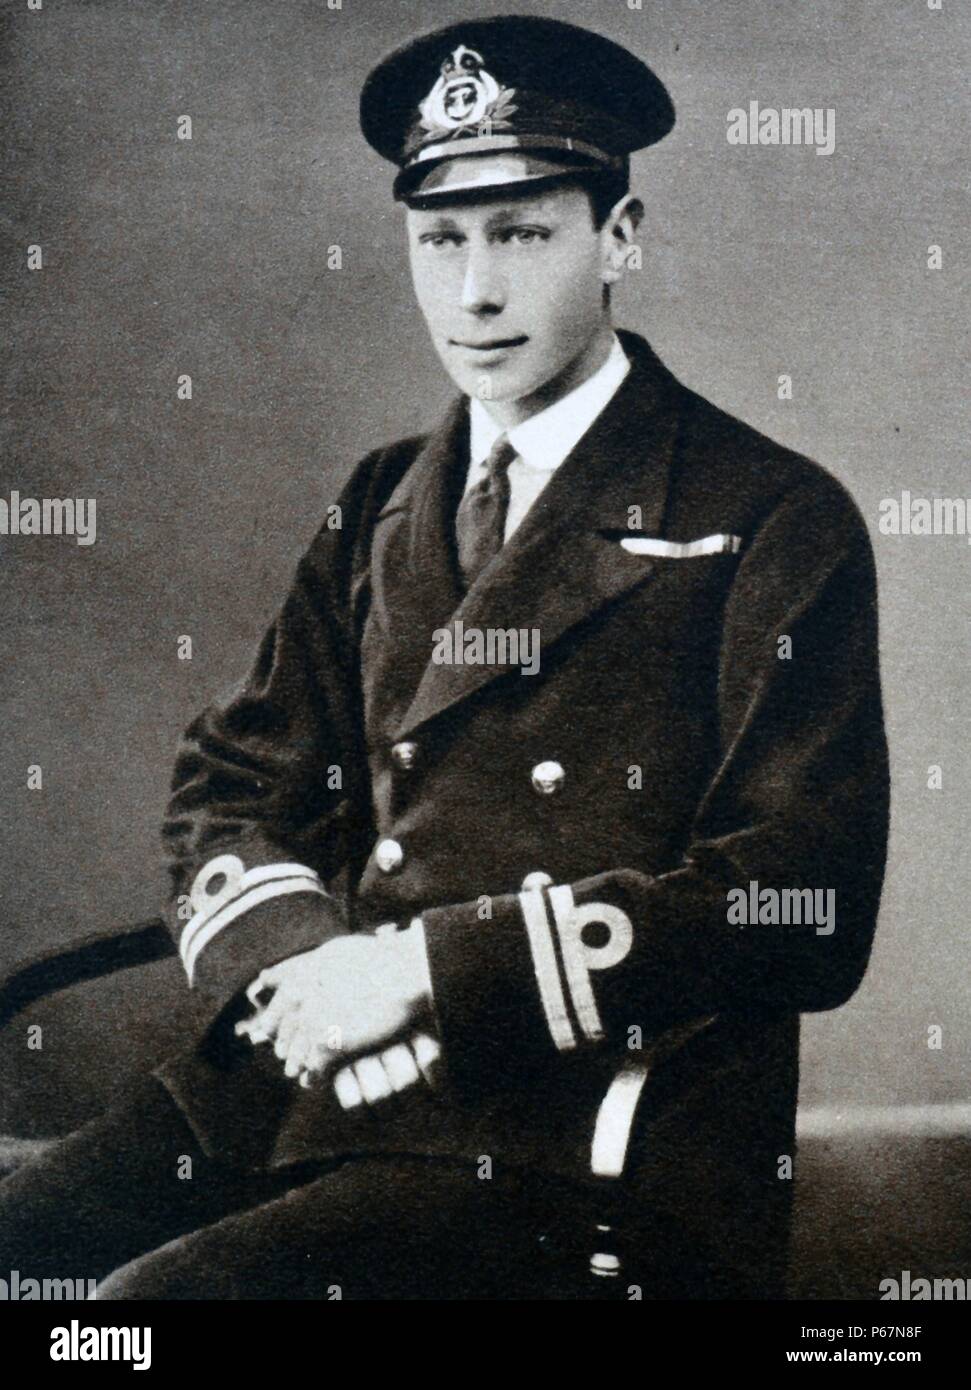 Prince Albert (plus tard le roi George VI) est montré dans son uniforme d'officier de marine. Il a été renvoyé de H.M.S Collingwood, de recouvrer pour l'appendicite, durant cette période, il a servis le thé aux blessés à Buckingham Palace. Banque D'Images